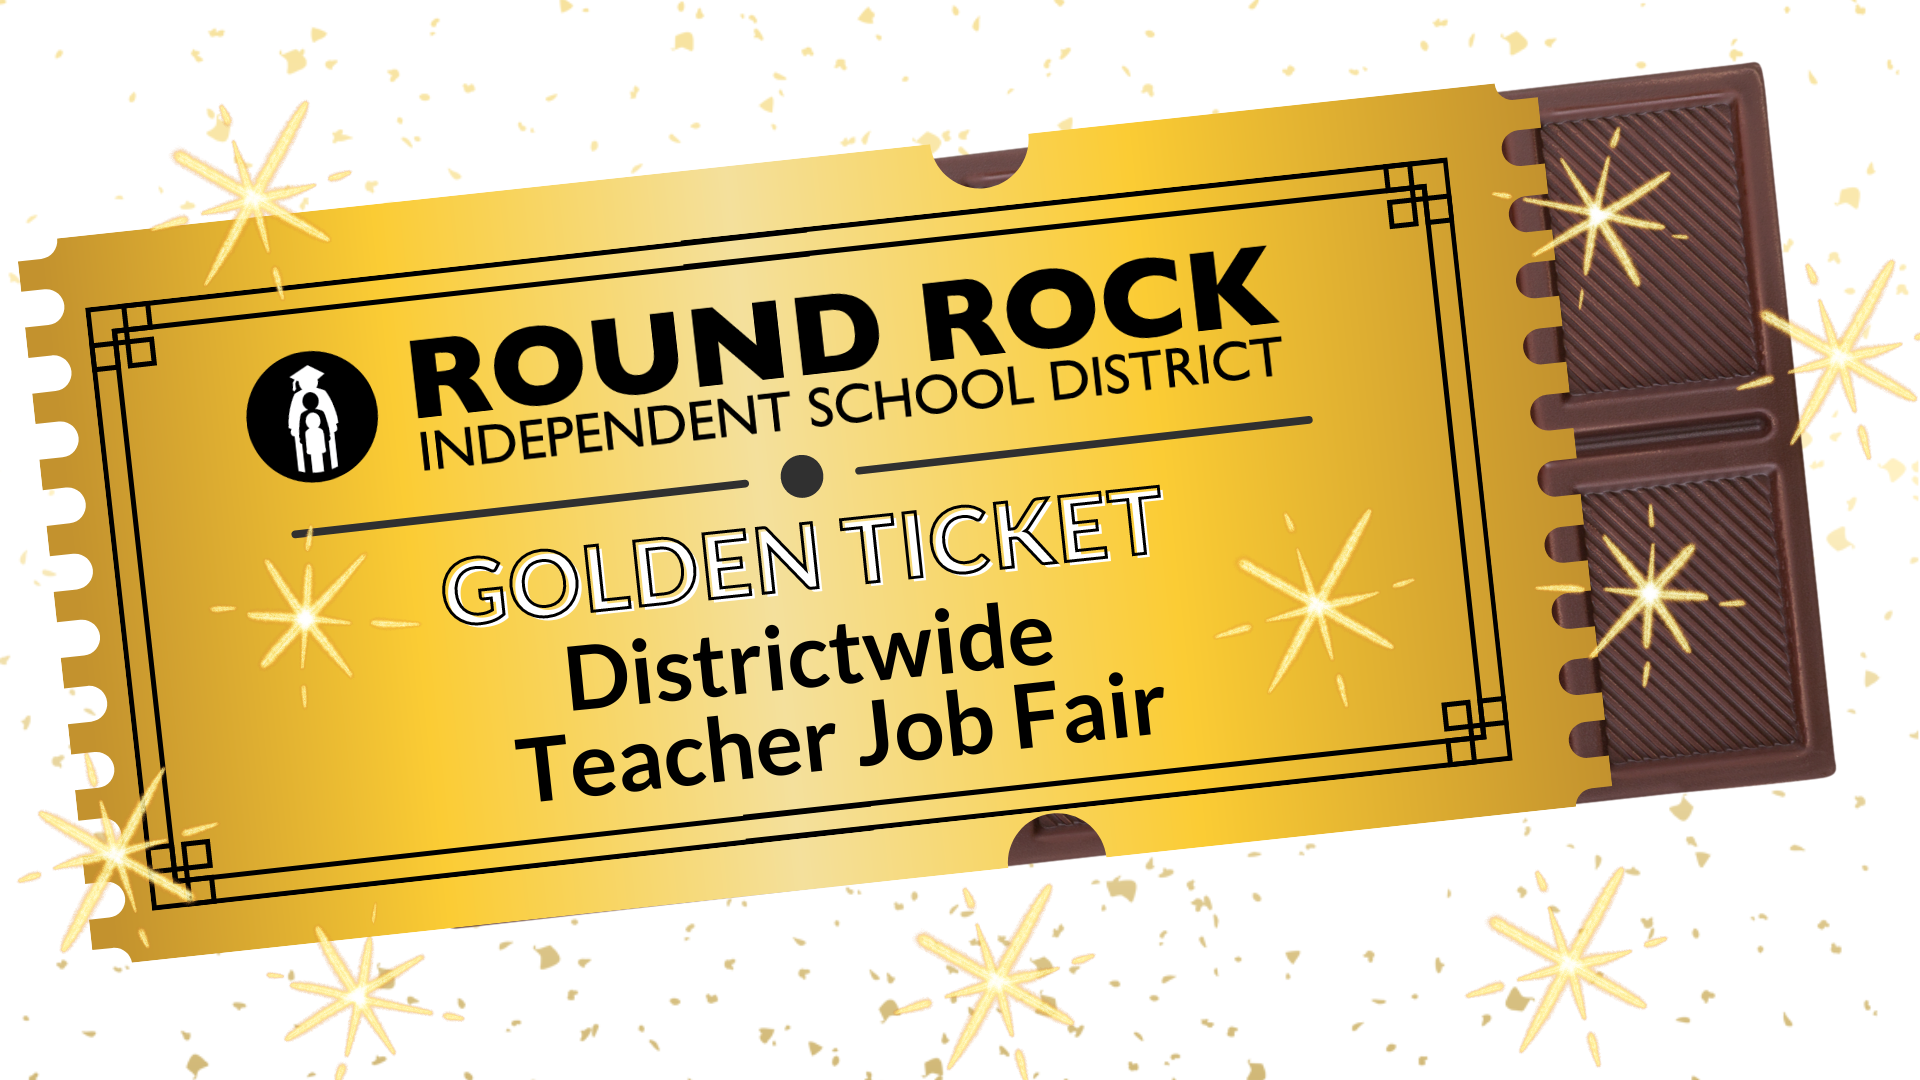 Round Rock Independent school district. Golden Ticket. Districtwide teacher job fair.